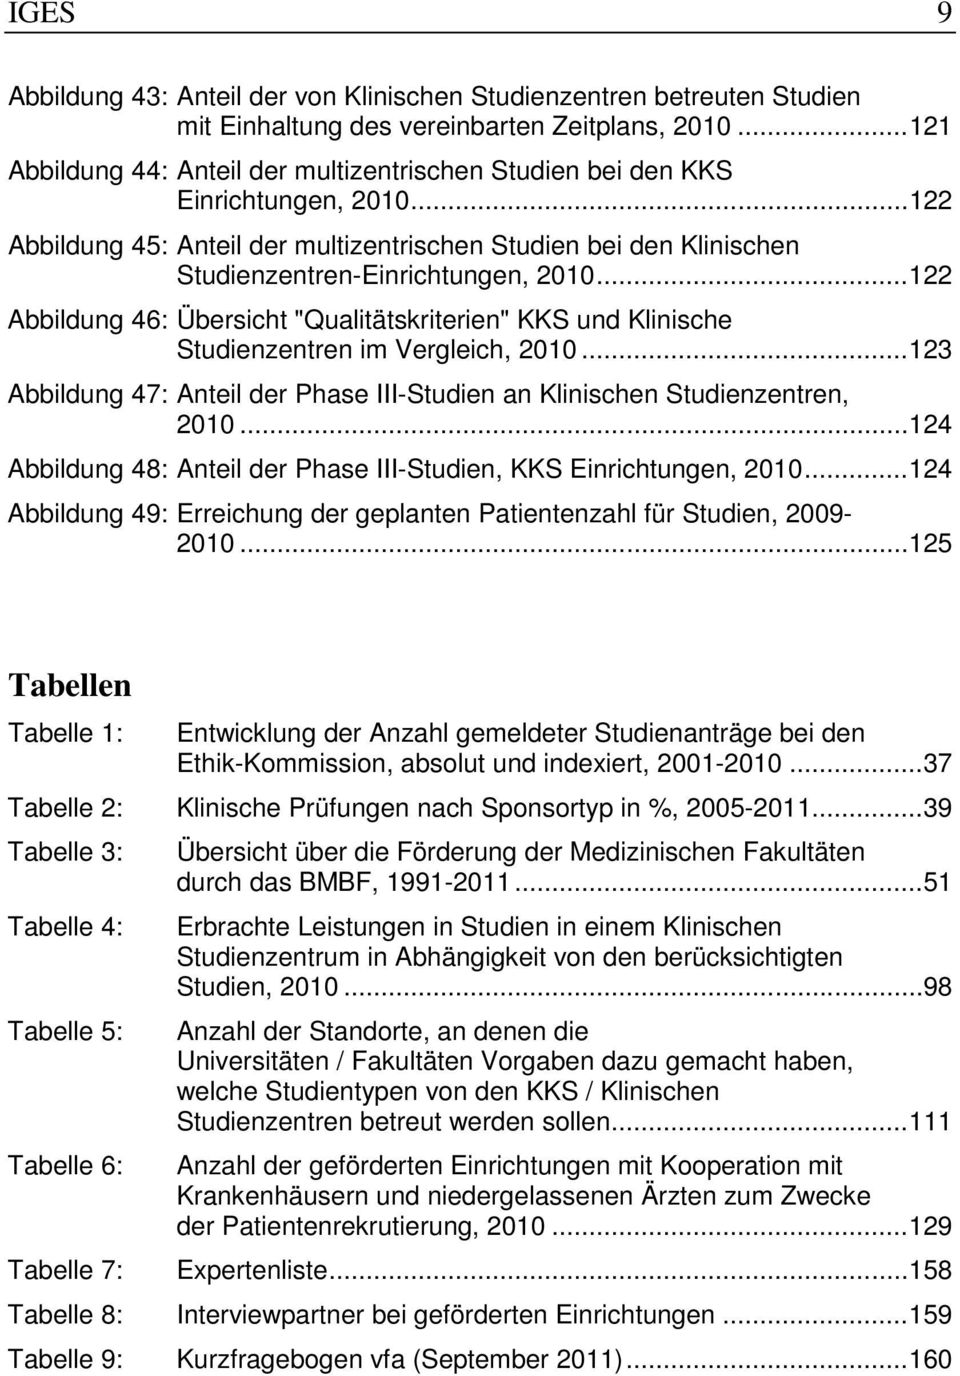 .. 122 Abbildung 46: Übersicht "Qualitätskriterien" KKS und Klinische Studienzentren im Vergleich, 2010... 123 Abbildung 47: Anteil der Phase III-Studien an Klinischen Studienzentren, 2010.